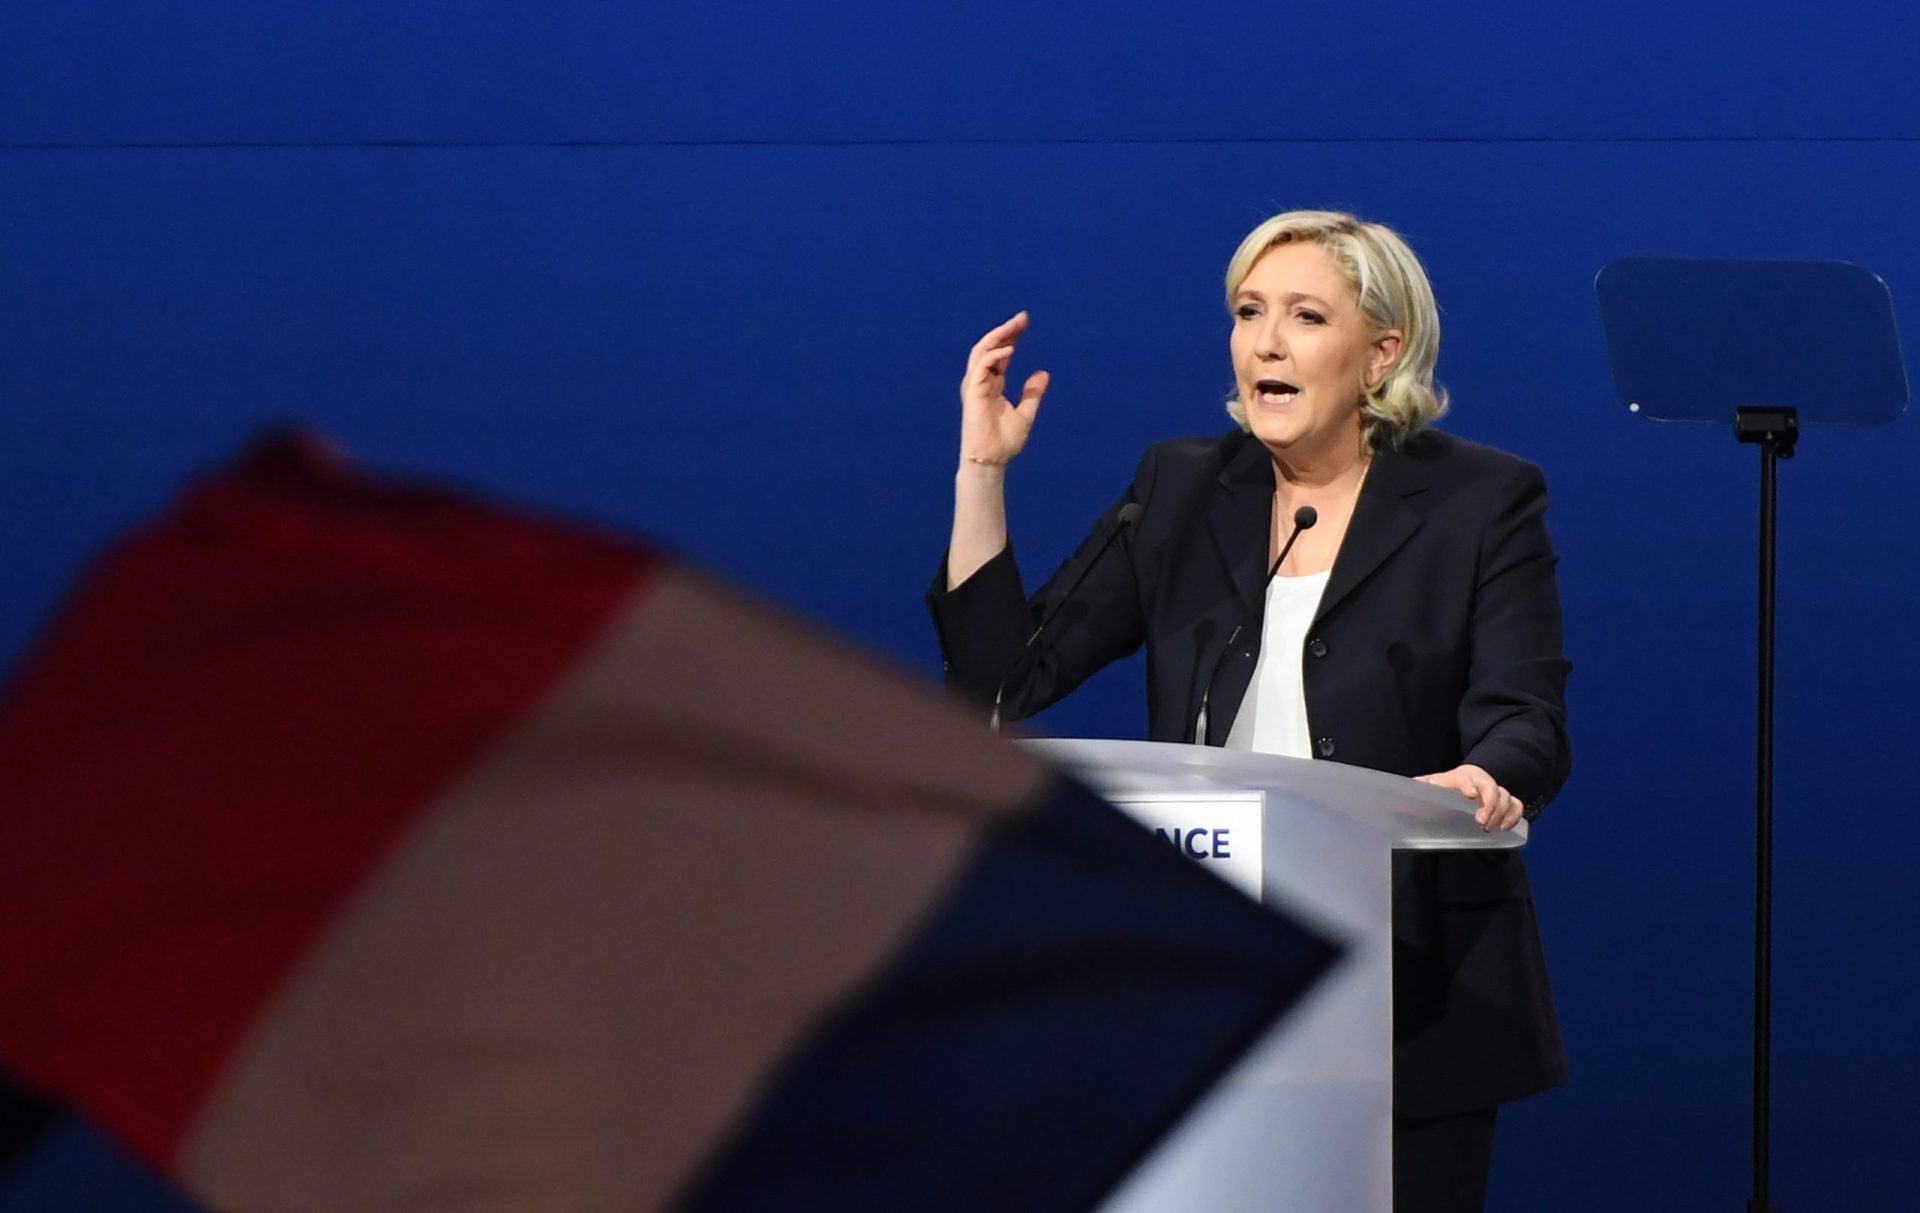 Marine Le Pen acusada de plagiar Fillon